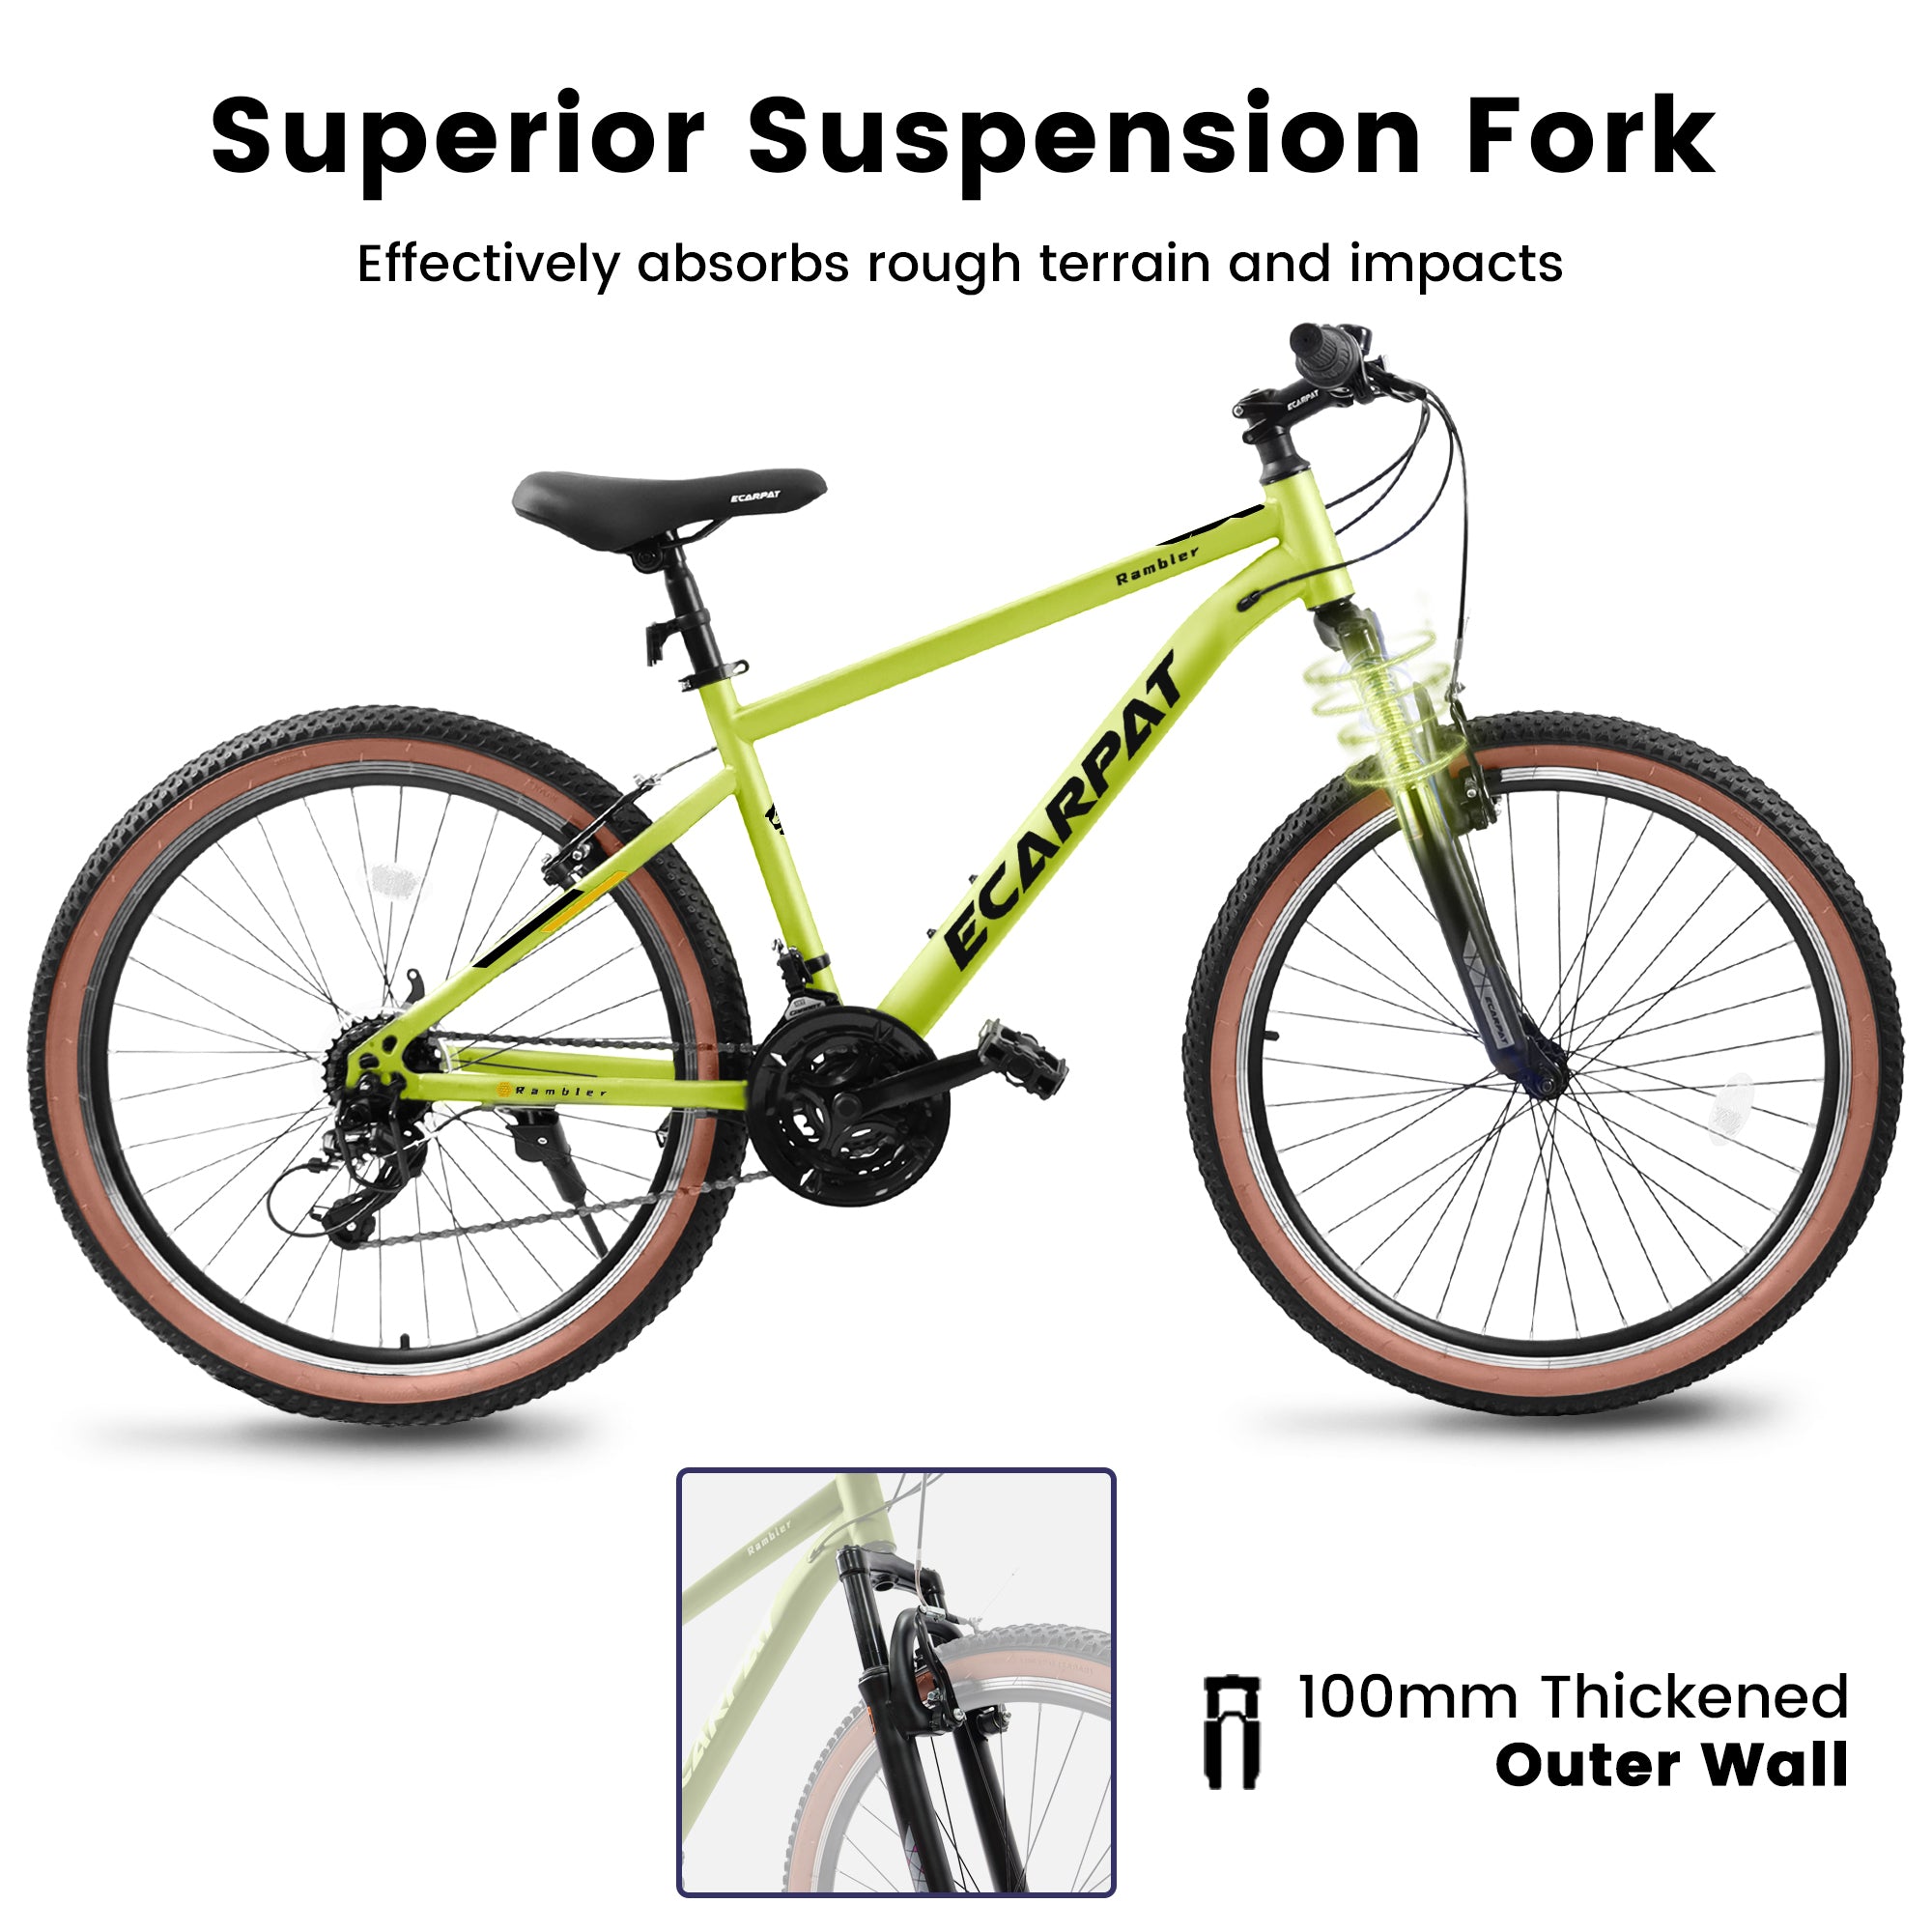 A26301 Ecarpat Mountain Bike 26 Inch Wheels, 21 Speed cycling-green-durable-garden &